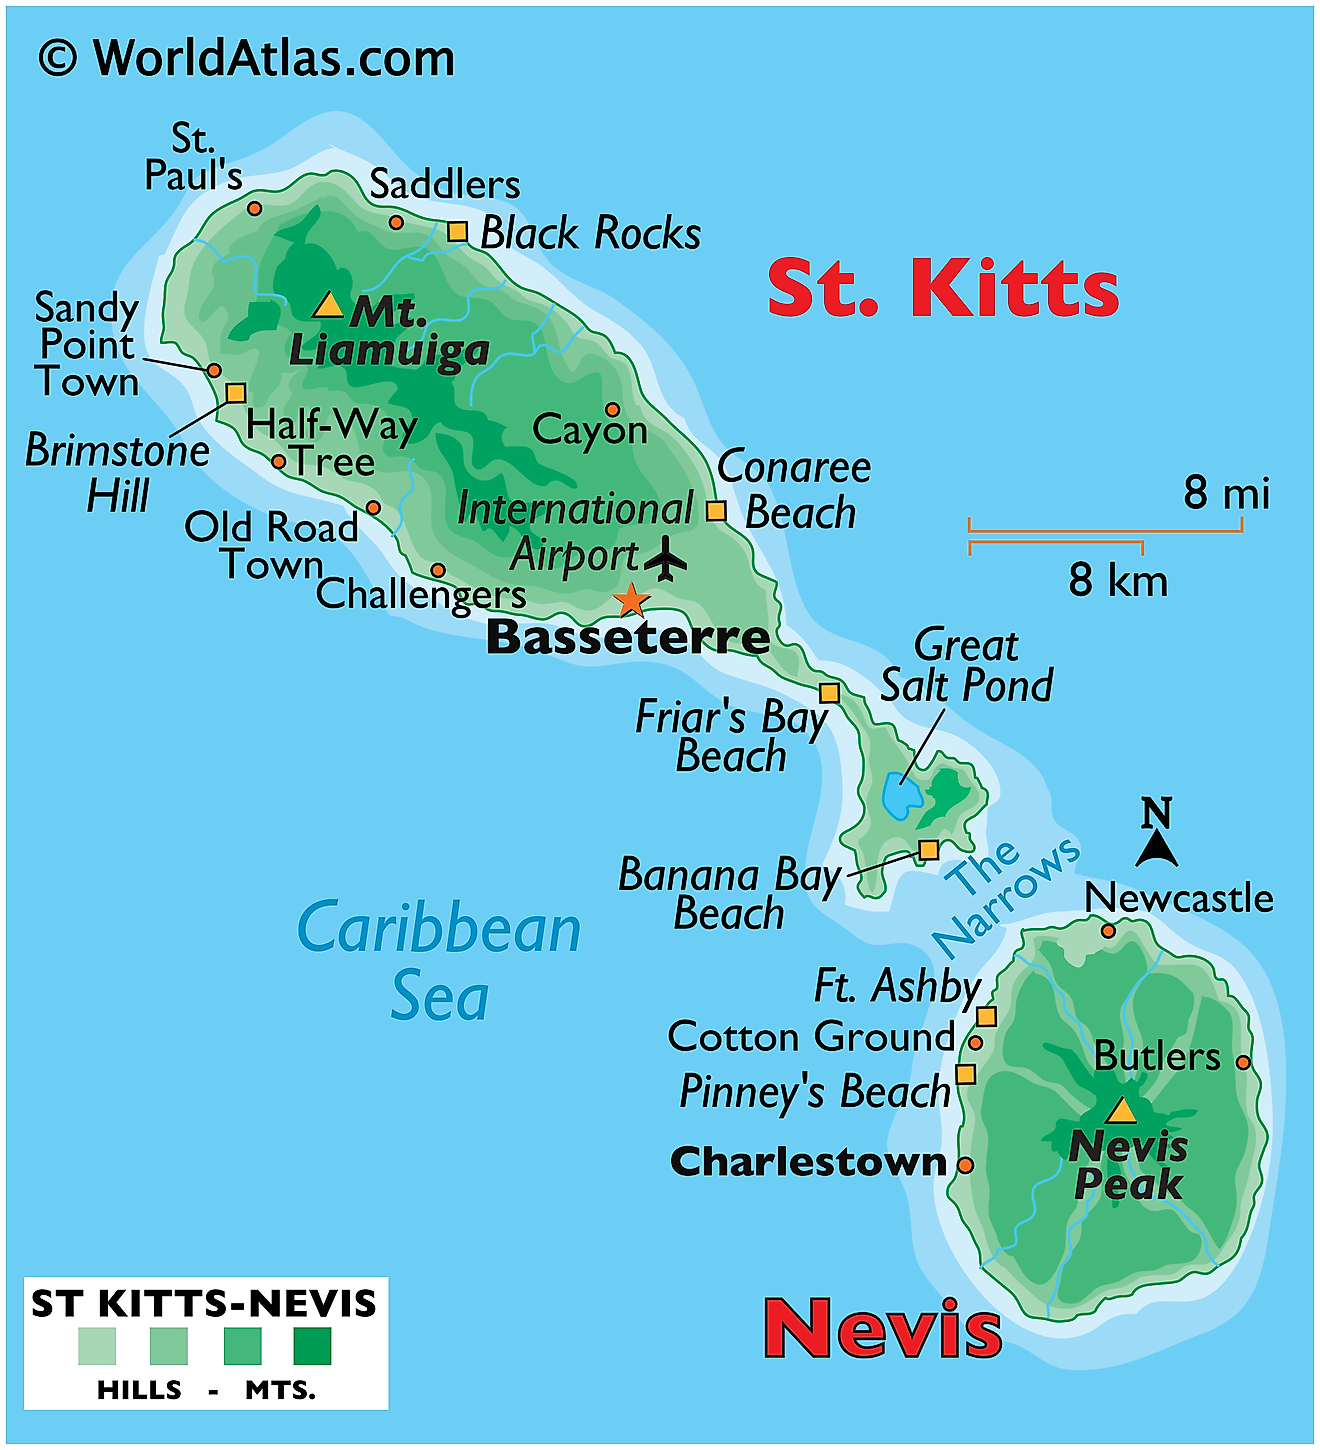 Mapa físico de San Cristóbal y Nieves que muestra el relieve, las islas, las montañas, las playas, los asentamientos importantes, etc.